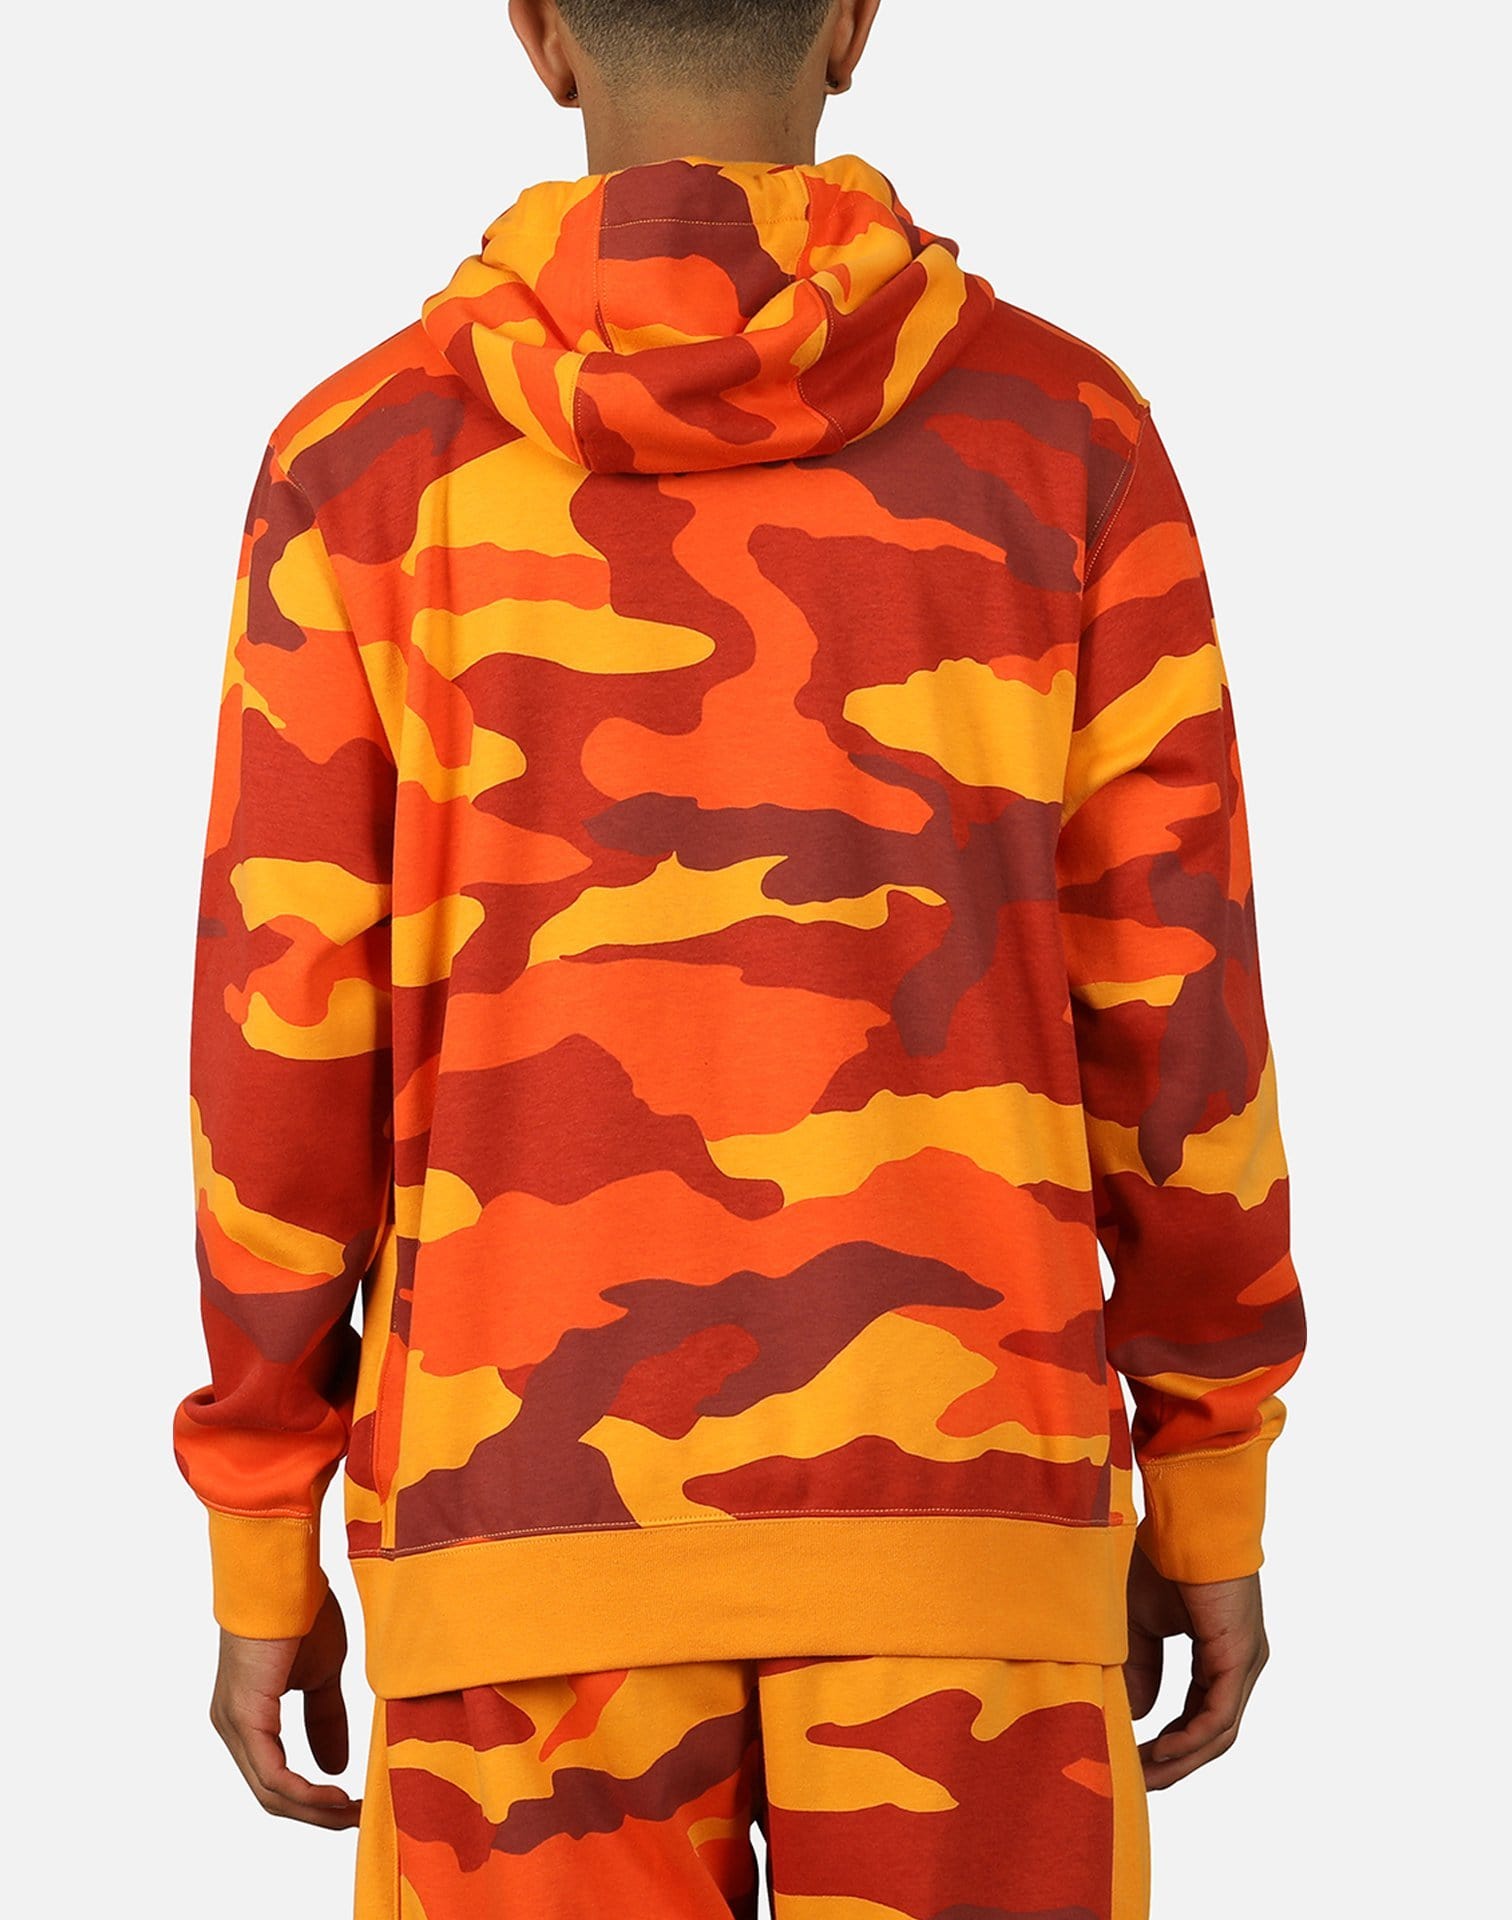 nike sportswear club fleece hoodie orange